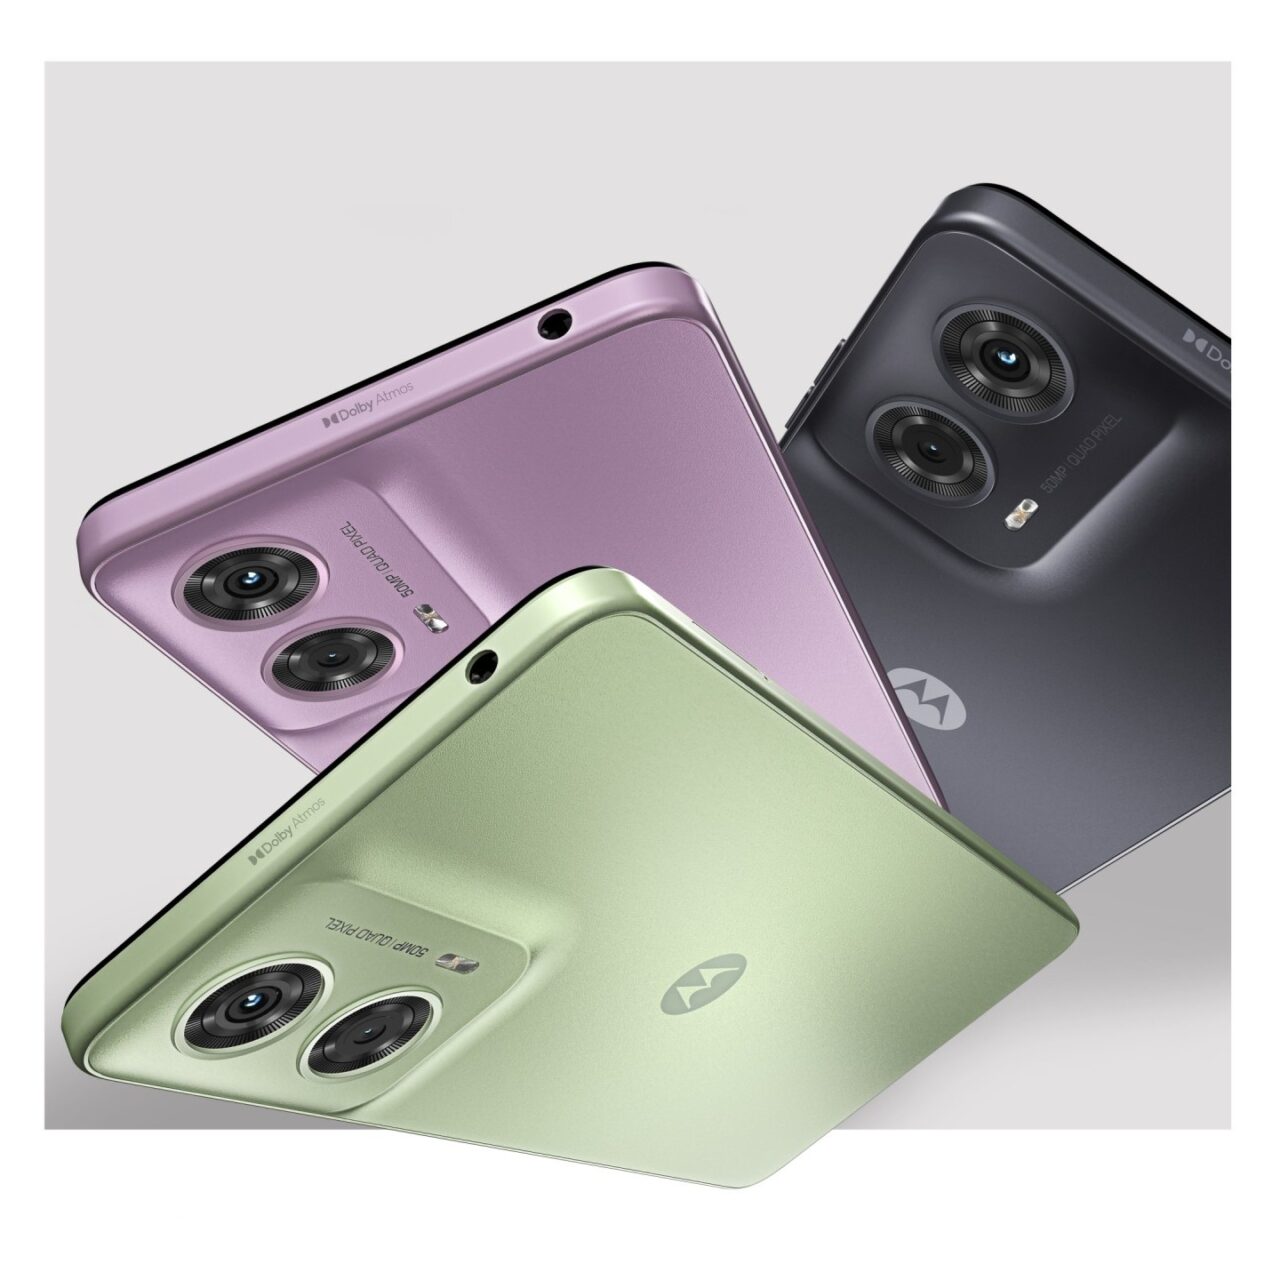 Trzy smartfony w różnych kolorach ułożone jeden na drugim, z wystającymi modułami potrójnych aparatów fotograficznych i logo producenta na tylnej obudowie.